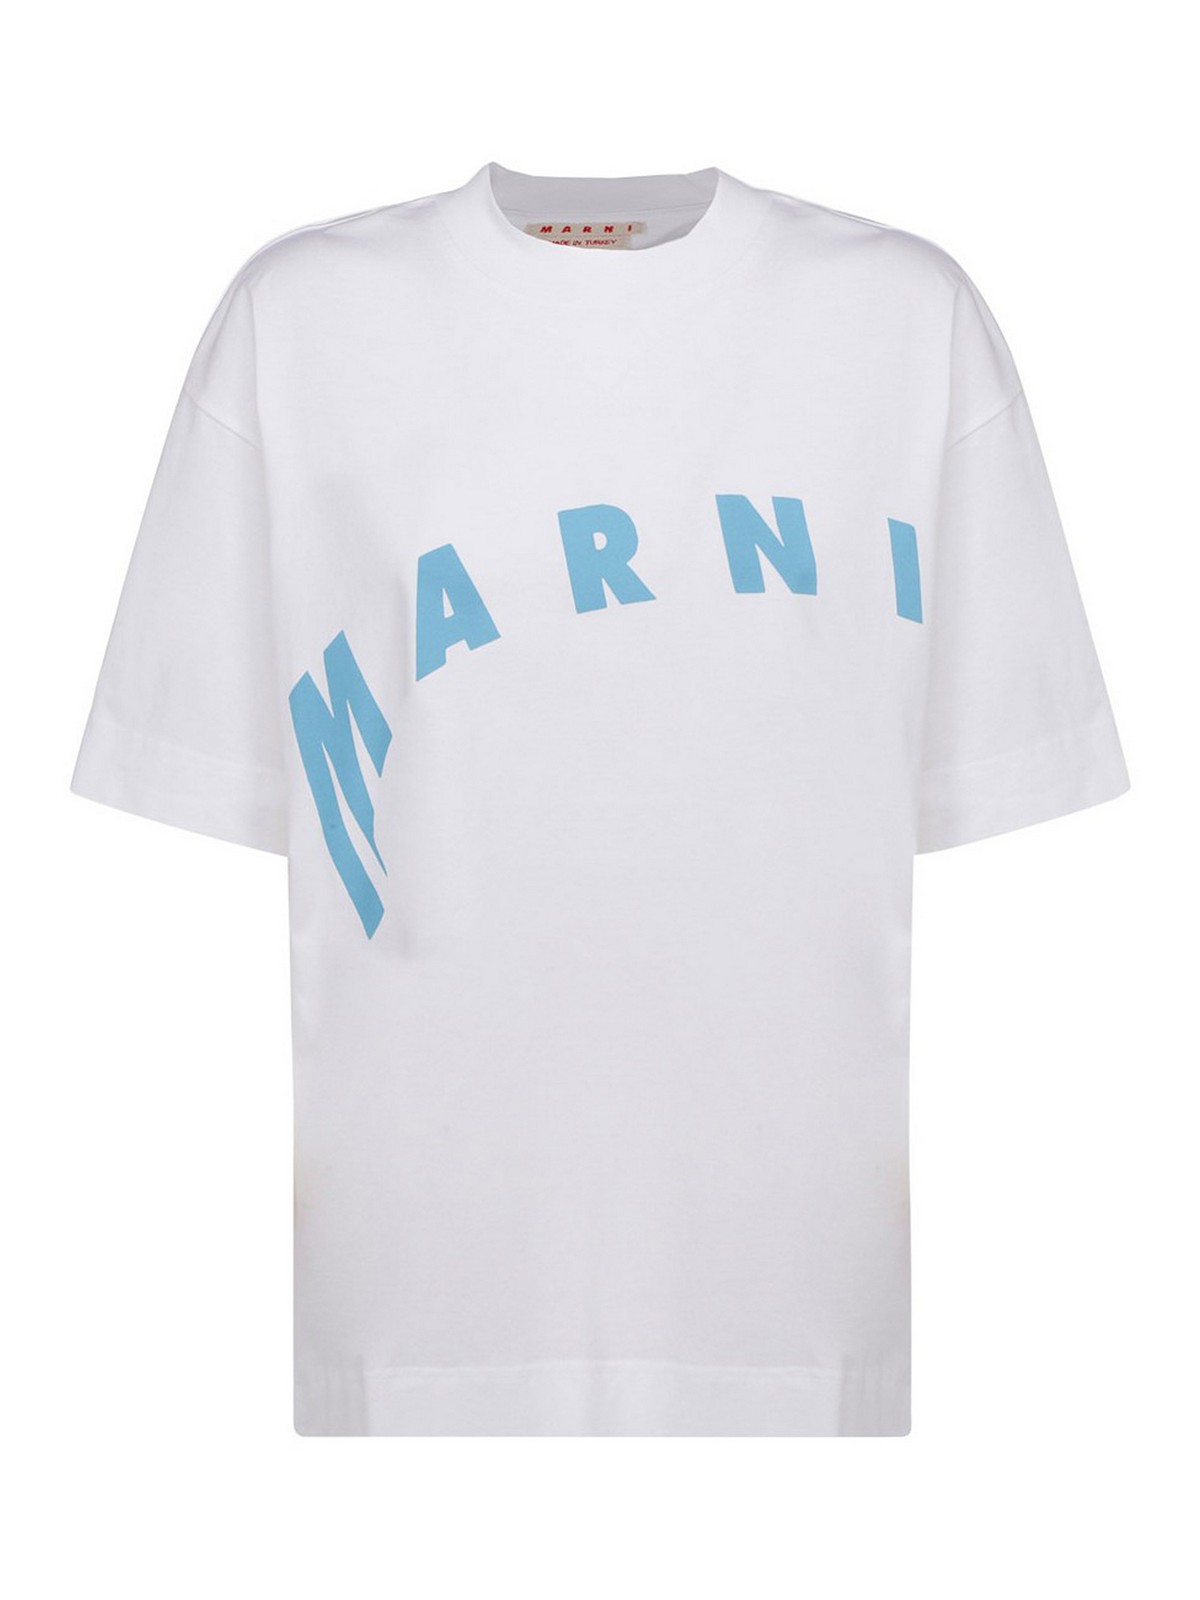 Tシャツ Marni - Tシャツ - 白 - THJET49EPFUSCR1300W01